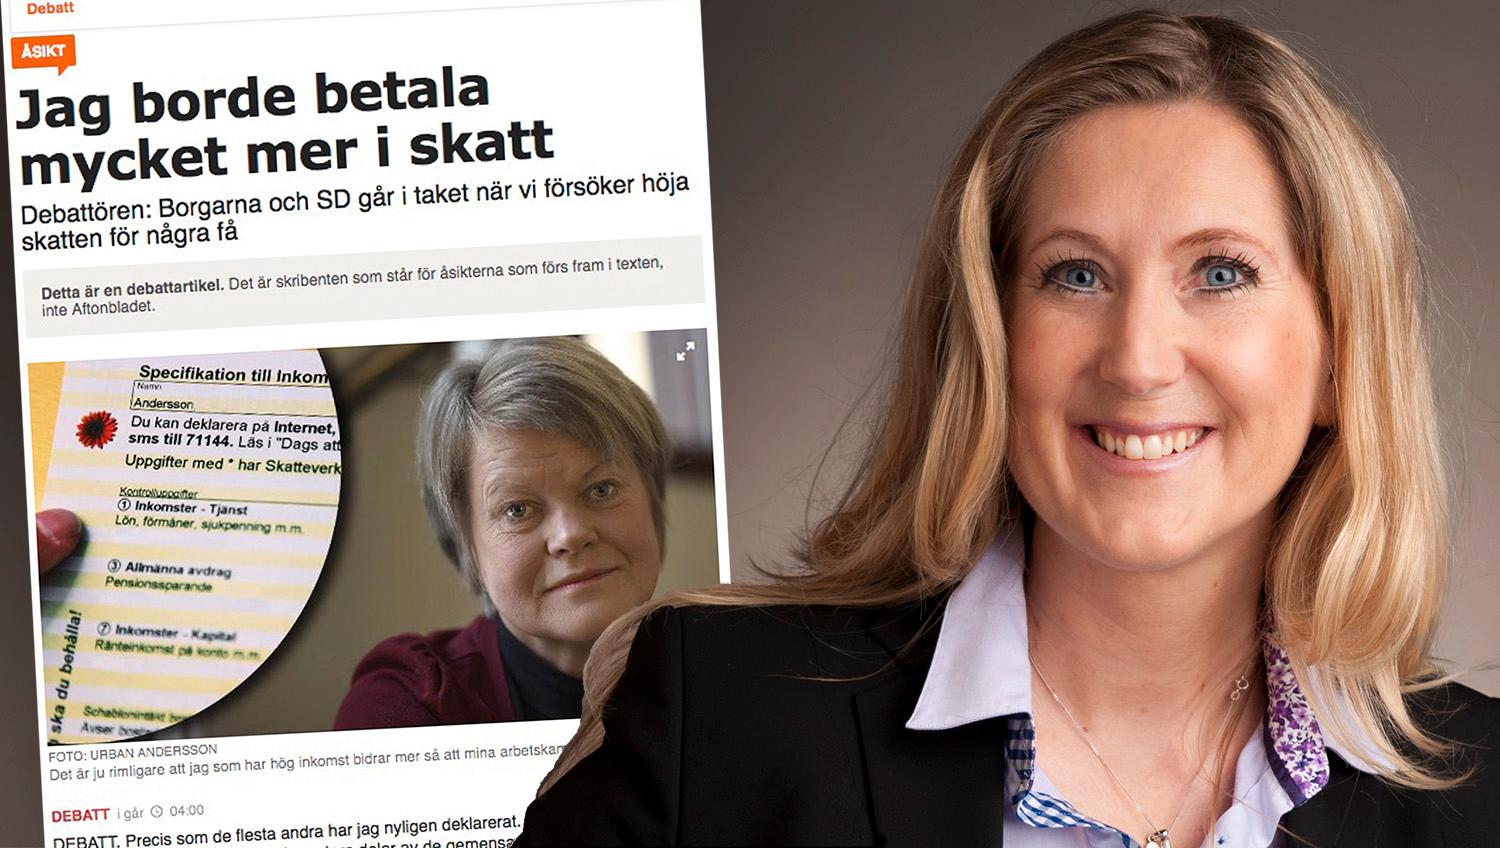 Att höja skatten för de med hög inkomst som Ulla Andersson föreslår leder till lägre skatteintäkter, färre arbetstillfällen och mindre pengar i vanligt folks plånböcker, skriver debattören.